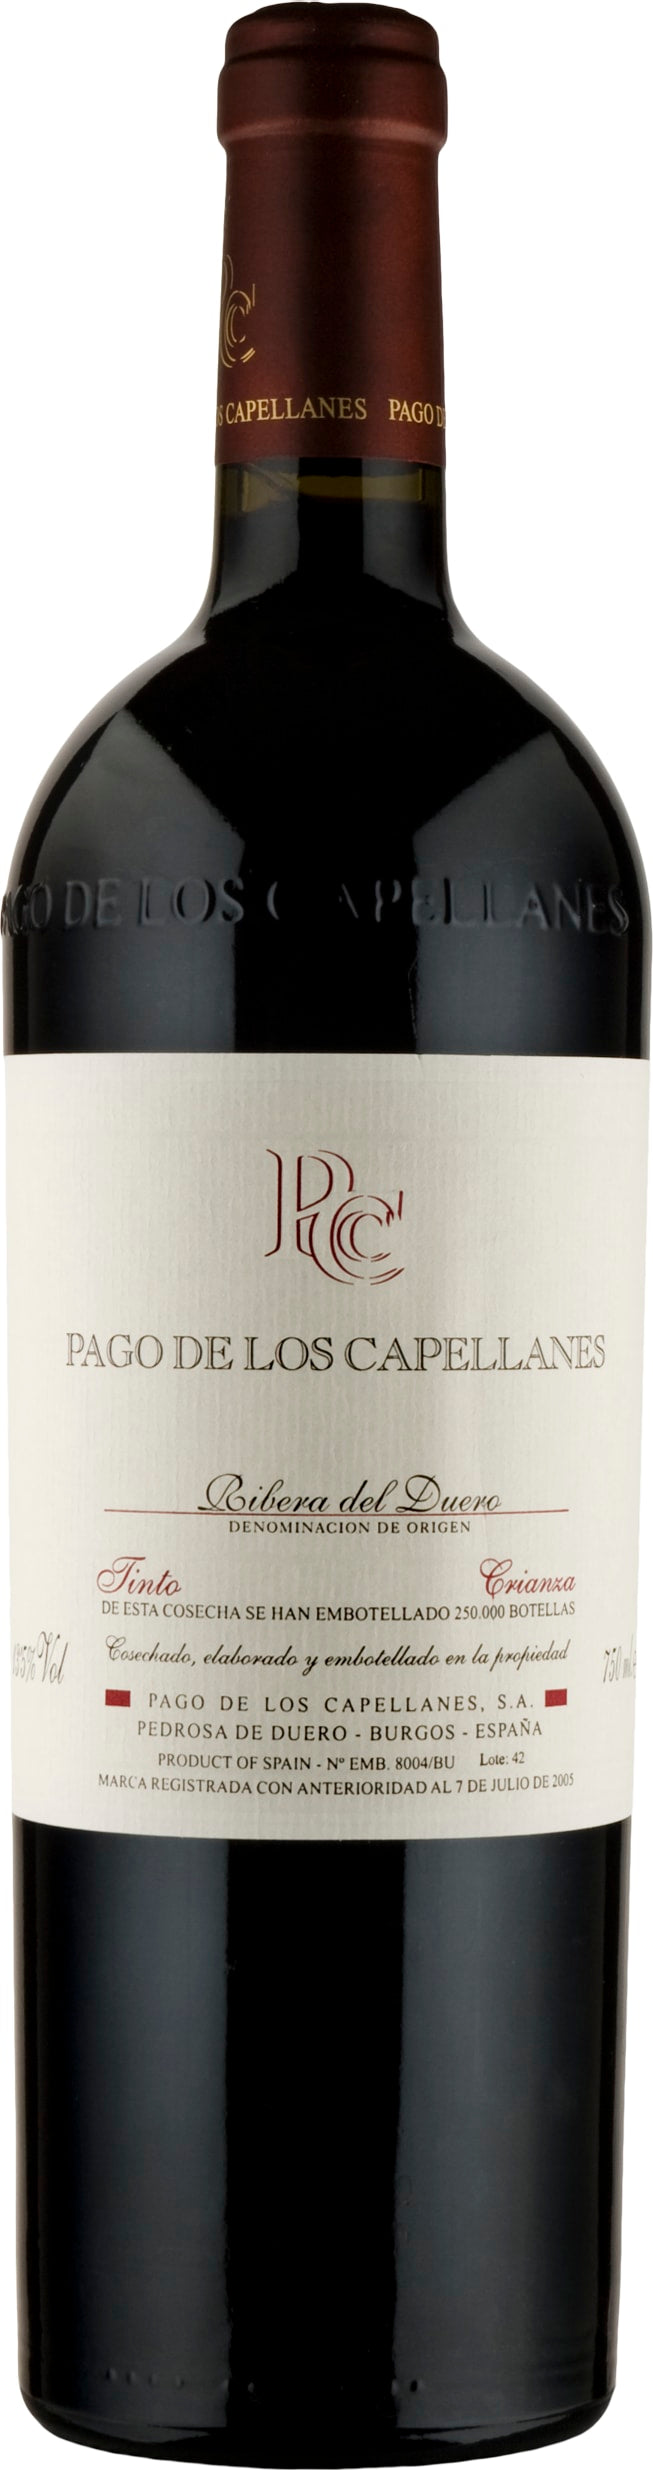 Pago de los Capellanes Ribera del Duero Crianza 2021 75cl - Buy Pago de los Capellanes Wines from GREAT WINES DIRECT wine shop